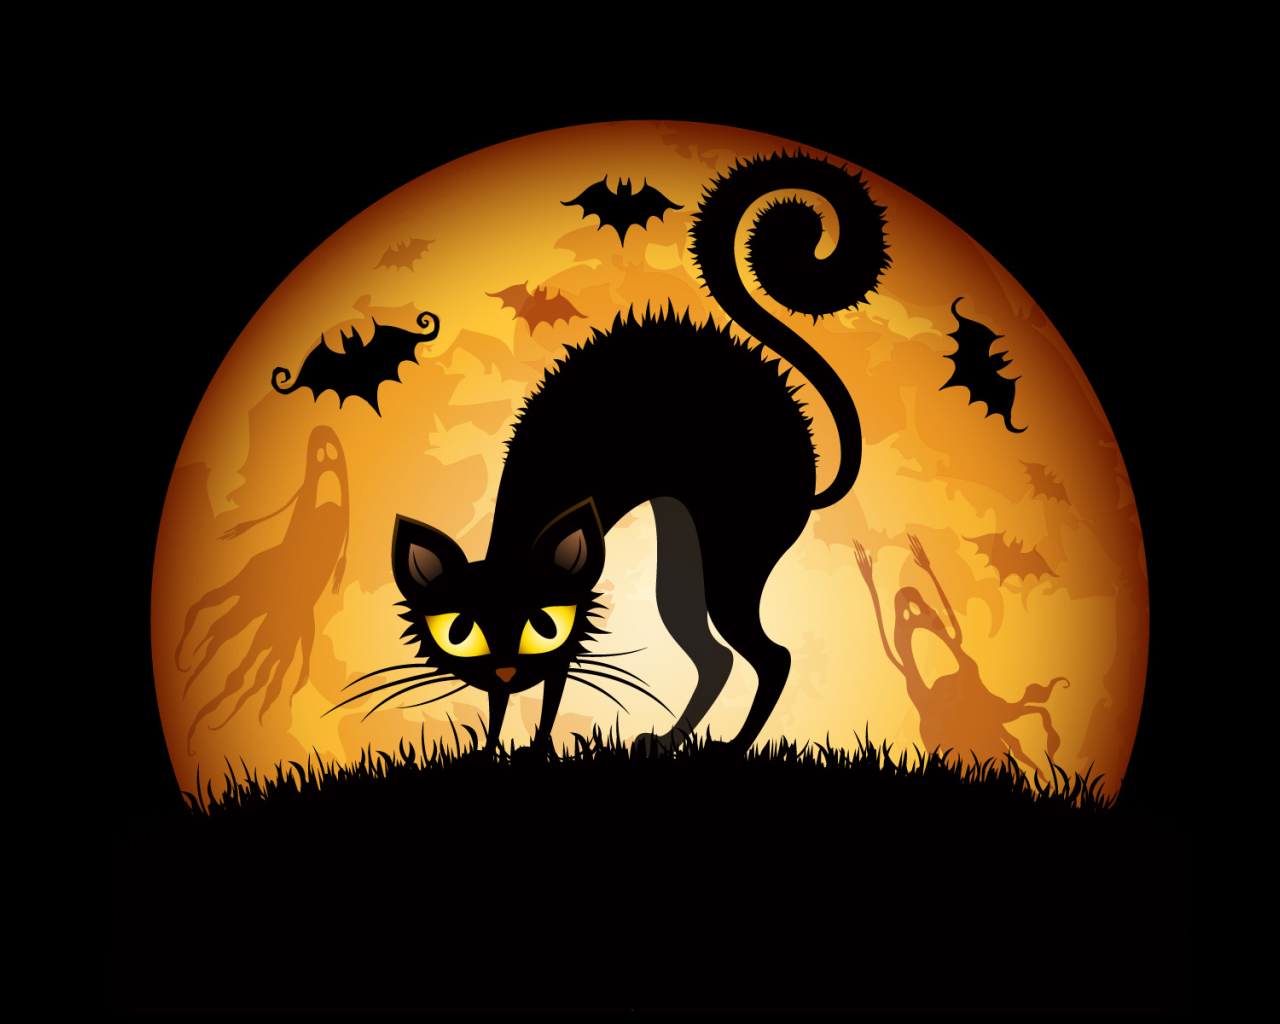 кошка, призраки, луна, halloween, хэллоуин, летучие мыши